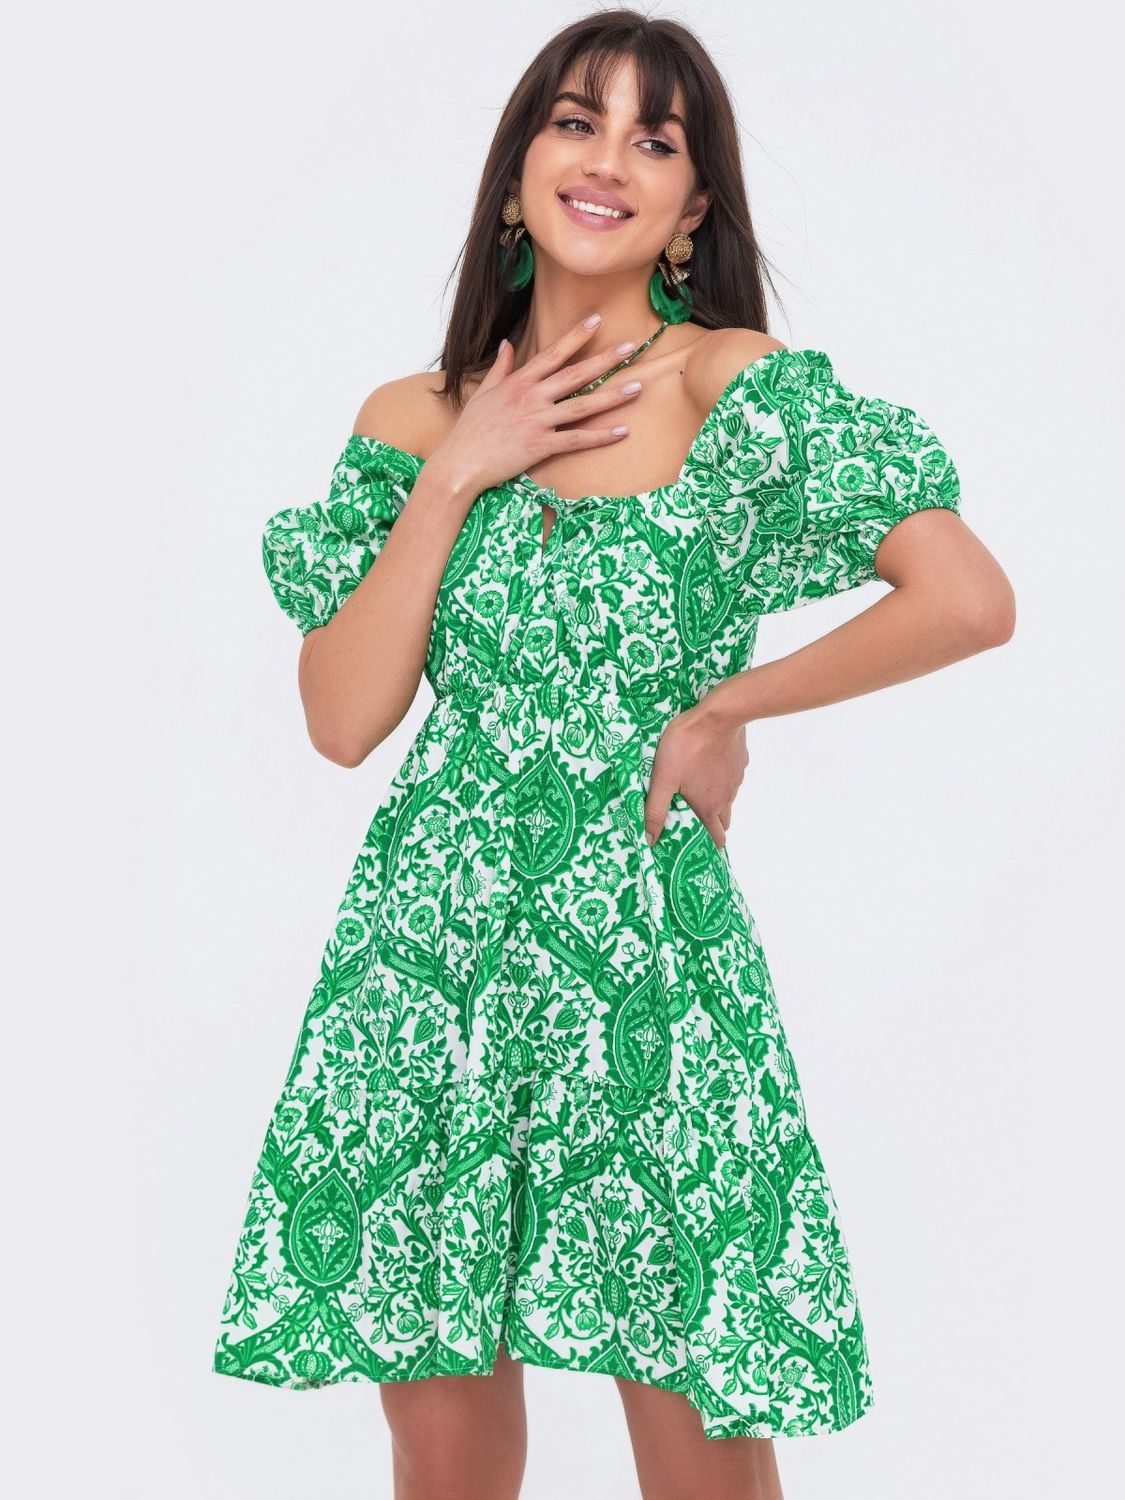 Літнє плаття із завищеною талією зеленого кольору - фото